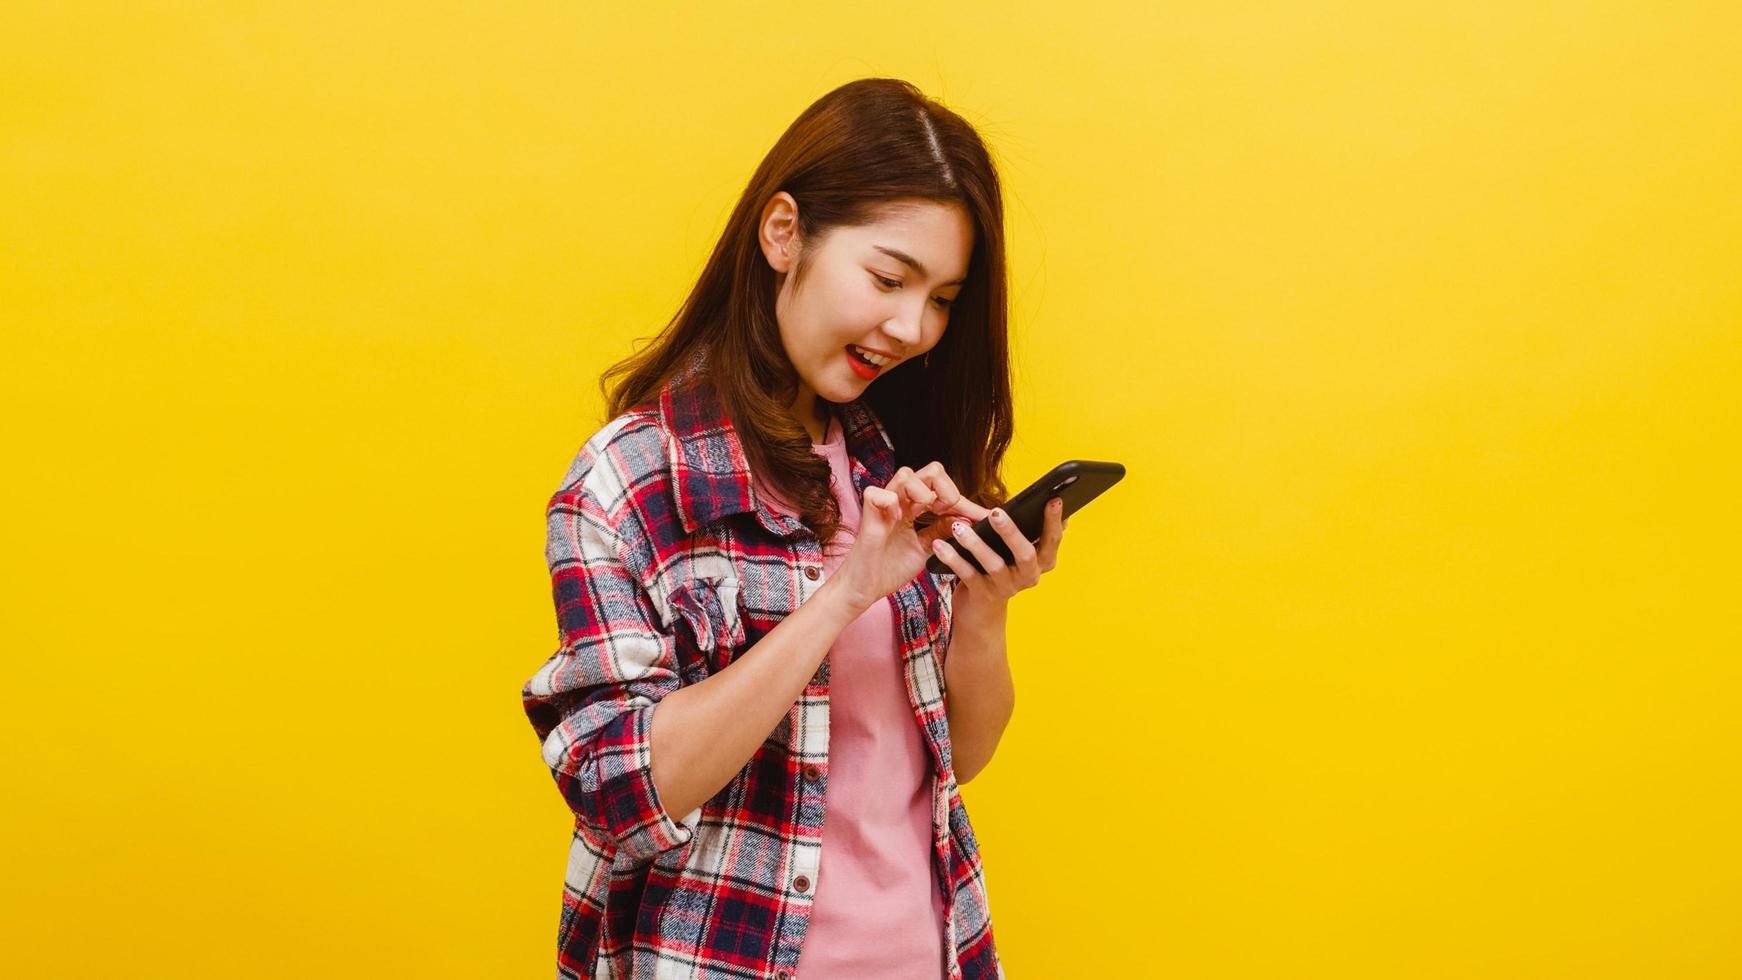 mulher asiática usando telefone com expressão positiva, sorri amplamente. foto